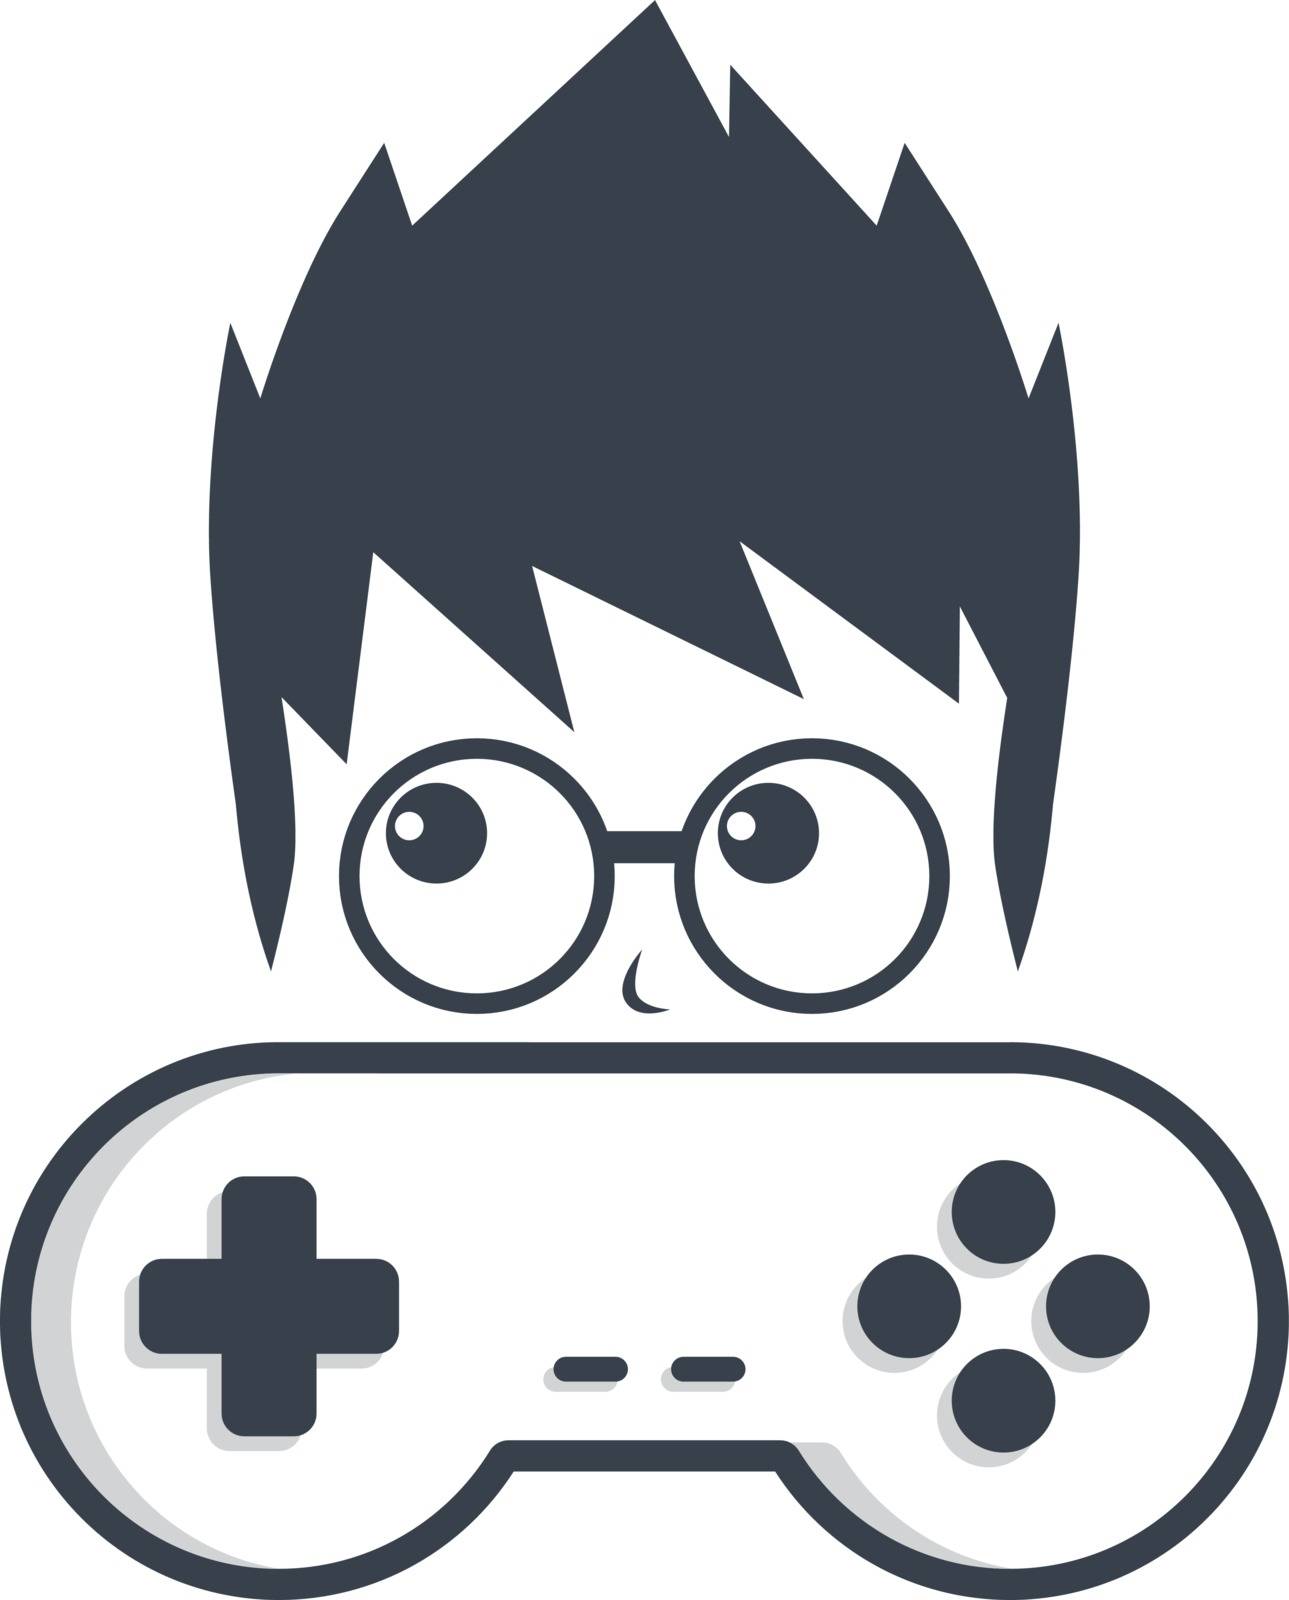 game nerd geek gamer joystick console controller logo vector